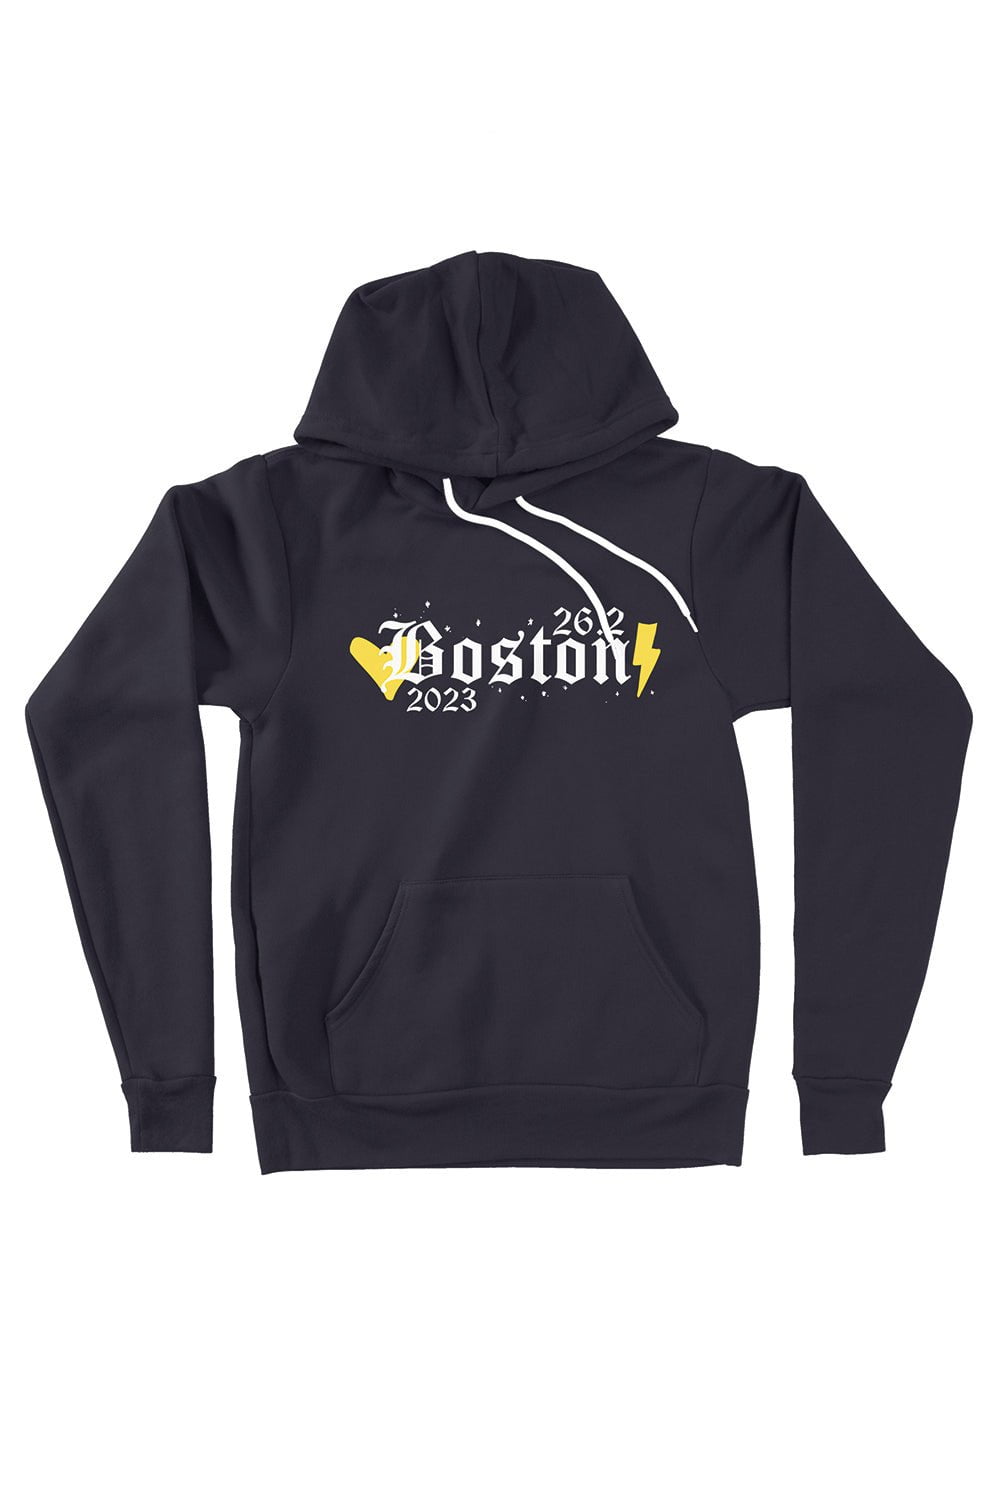 Sarah Marie Design Studio Sweatshirt XSmall / Navy The 2023 Boston 26.2 Marathon Hoodie